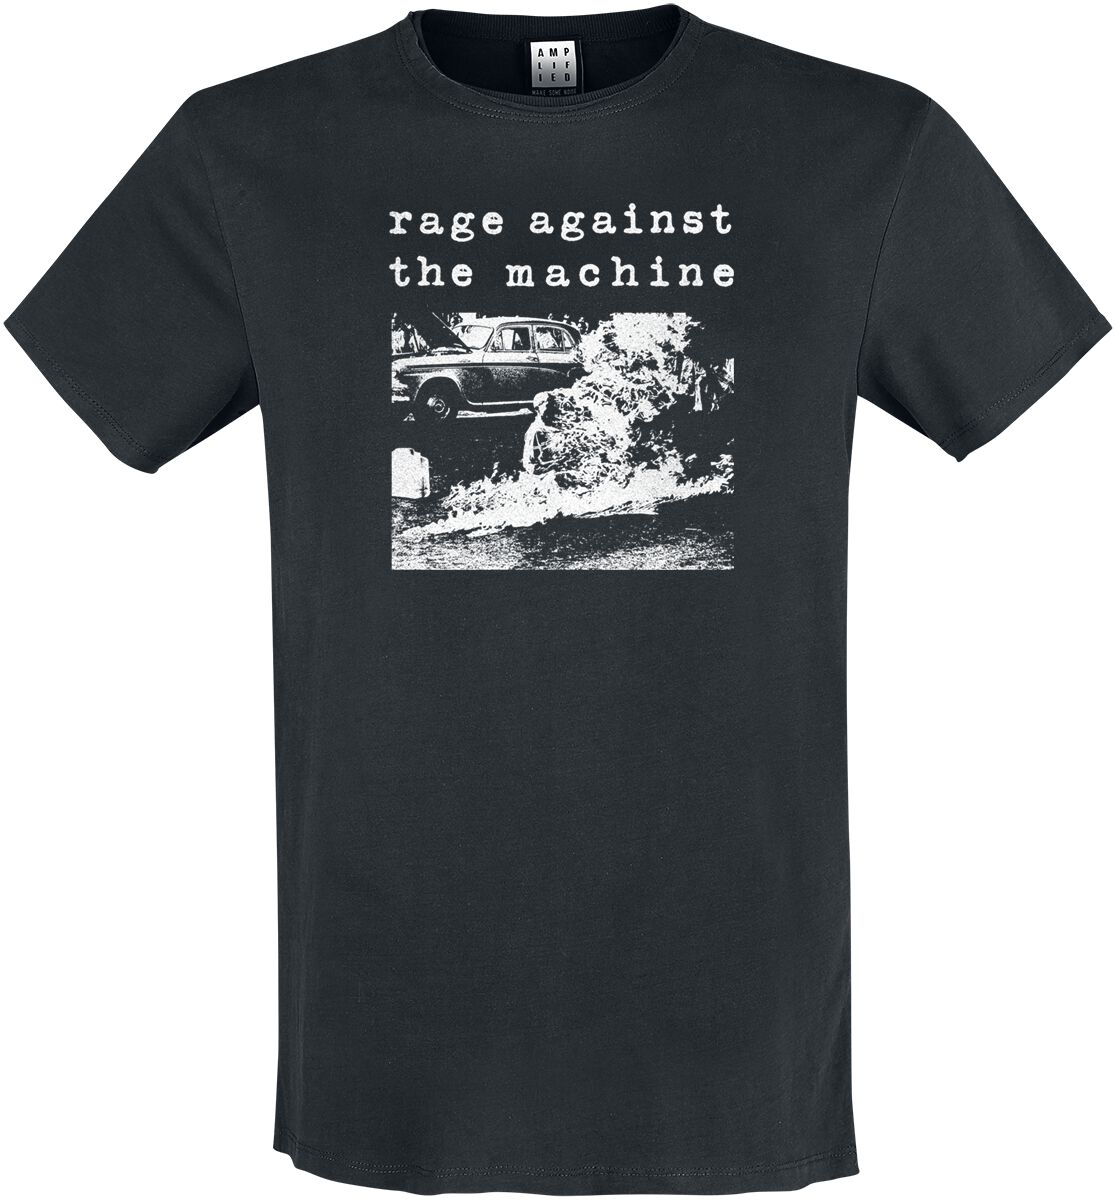 Rage Against The Machine T-Shirt - Amplified Collection - Monk Fire - S bis 3XL - für Männer - Größe 3XL - schwarz  - Lizenziertes Merchandise!